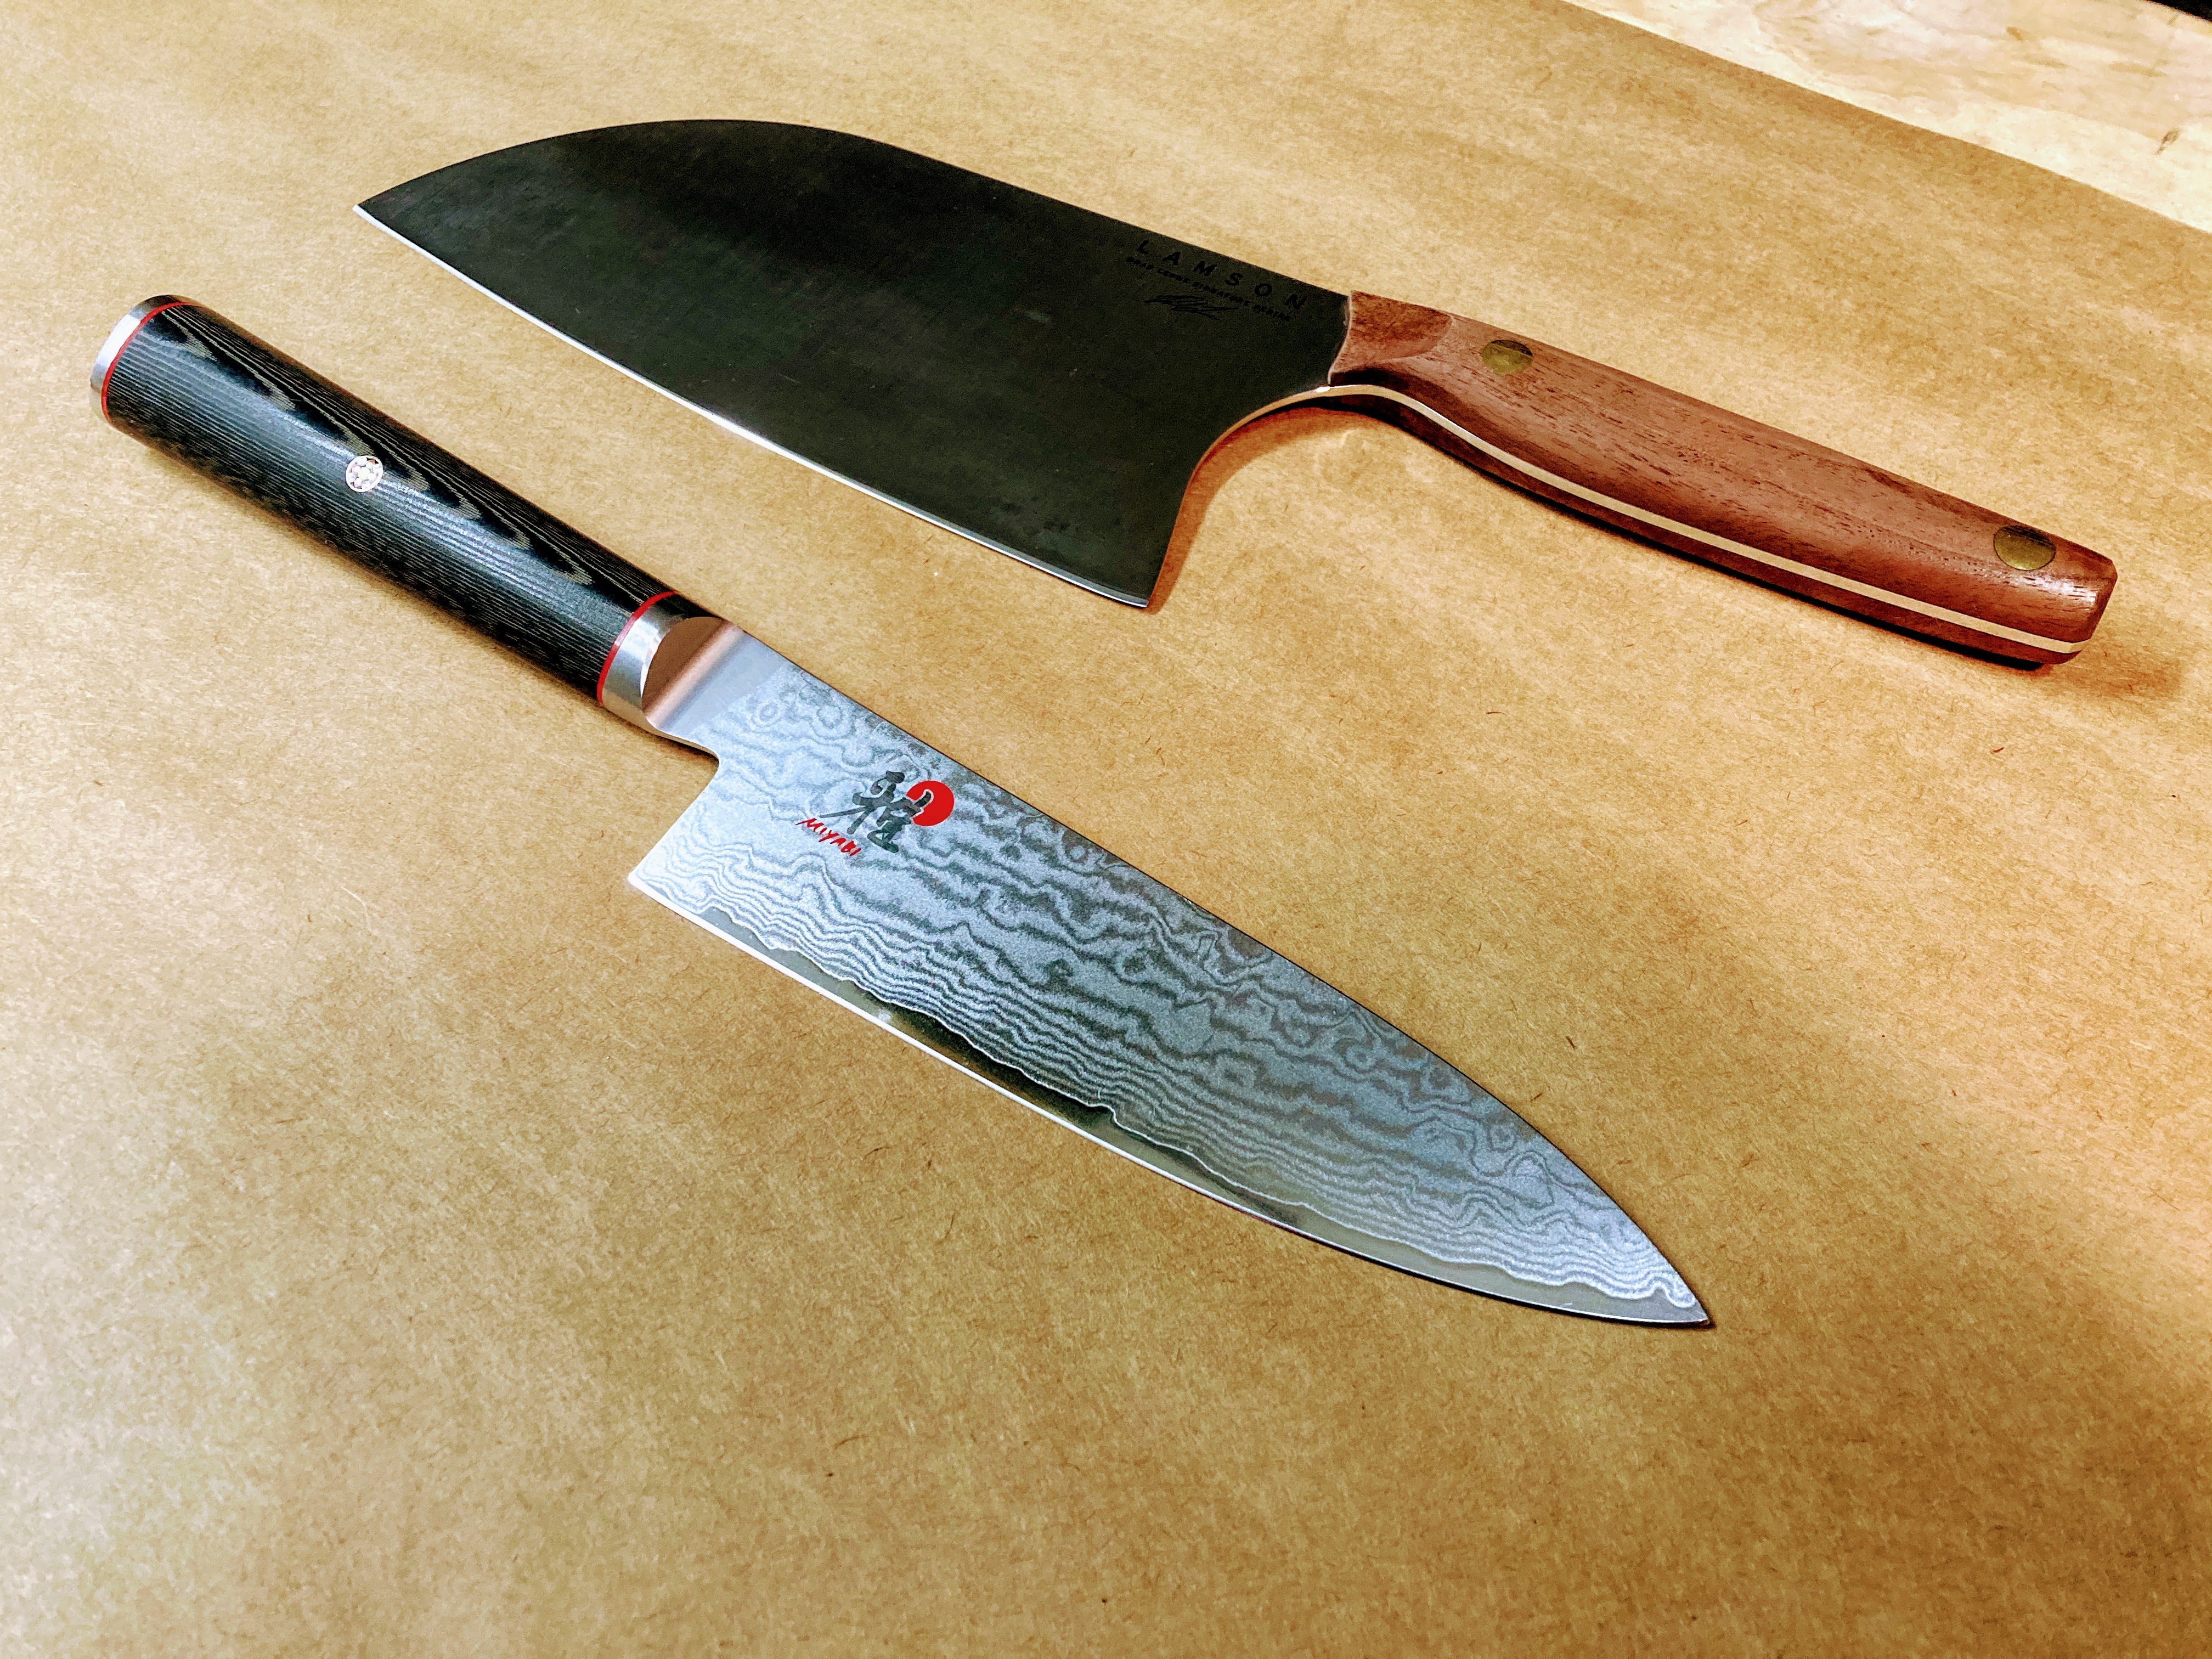 Beautiful Miyabi eight inch chef knife and Lamson cleaver freshly sharpened